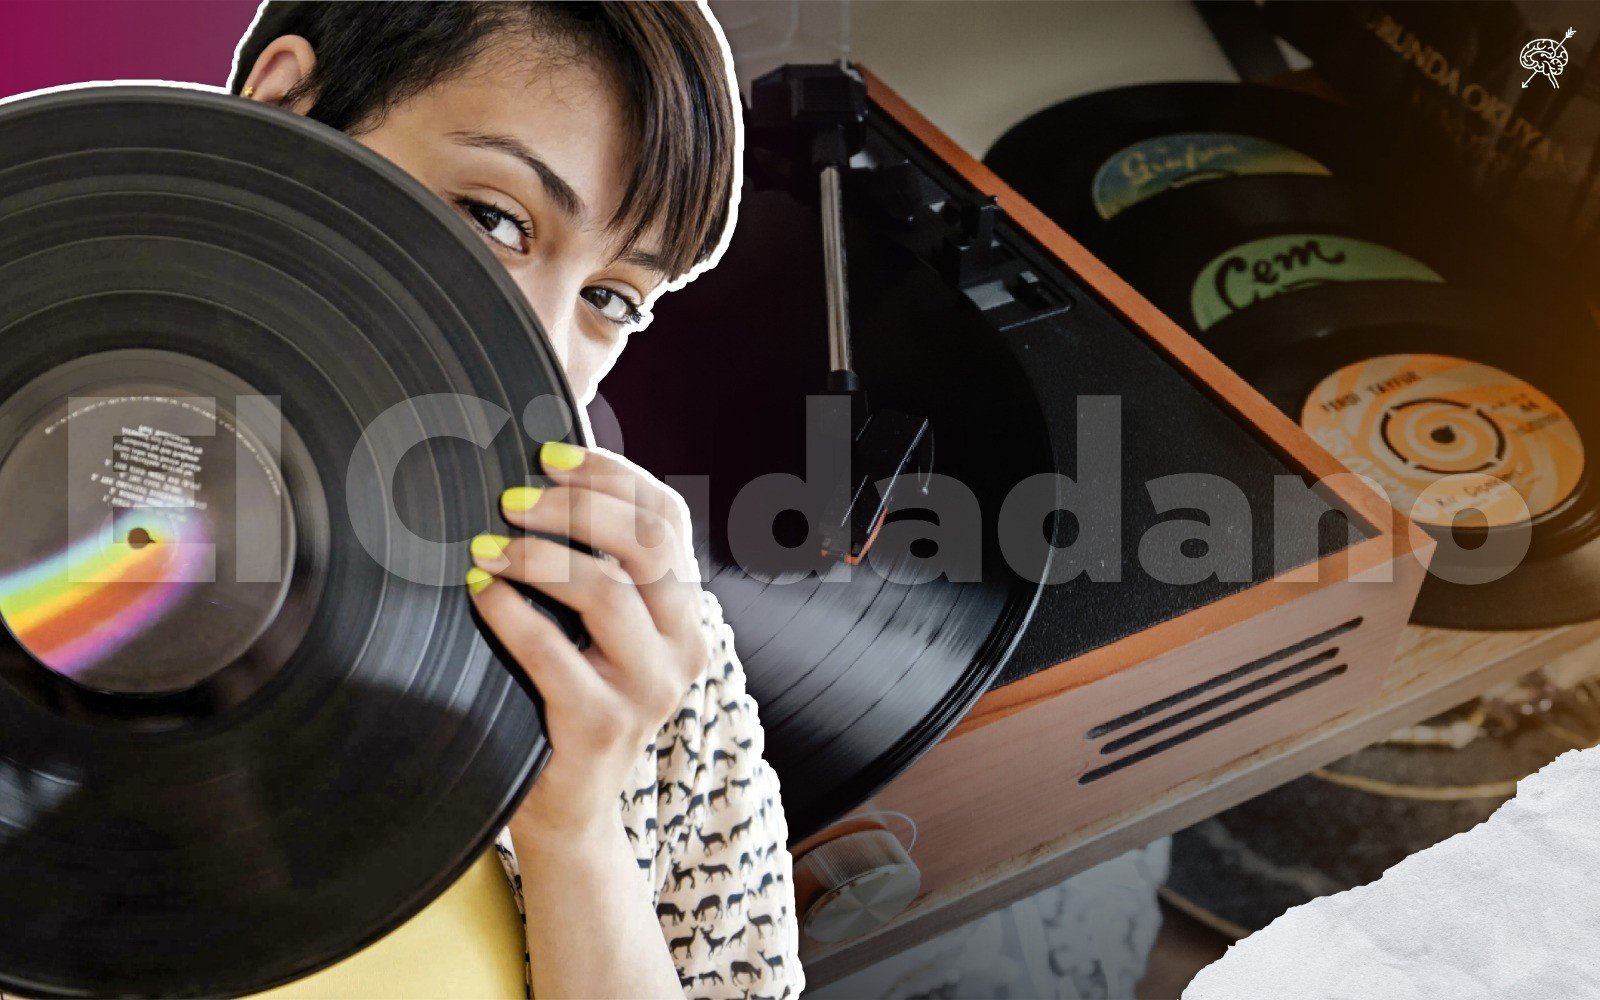 Discos de vinilo aún giran en el gusto musical de nuevas generaciones